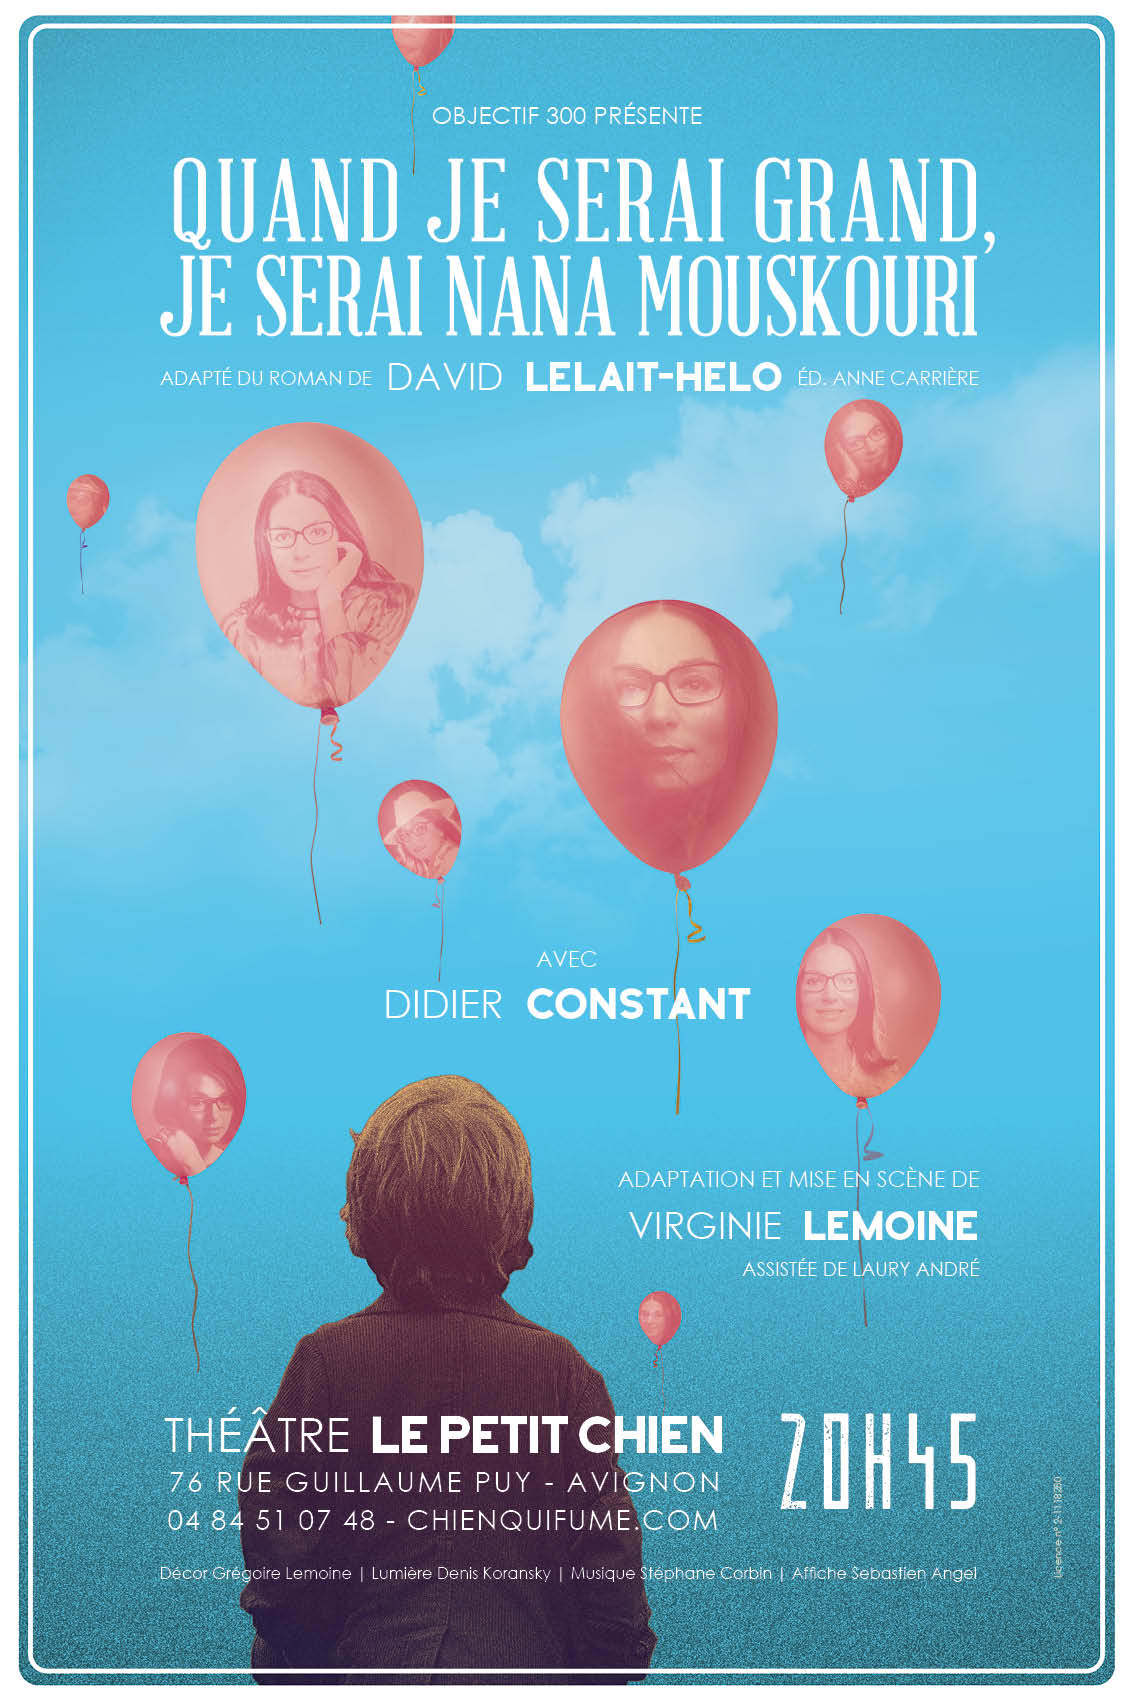 Quand je serai grand, je serai Nana Mouskouri par Virginie Lemoine affiche théâtre